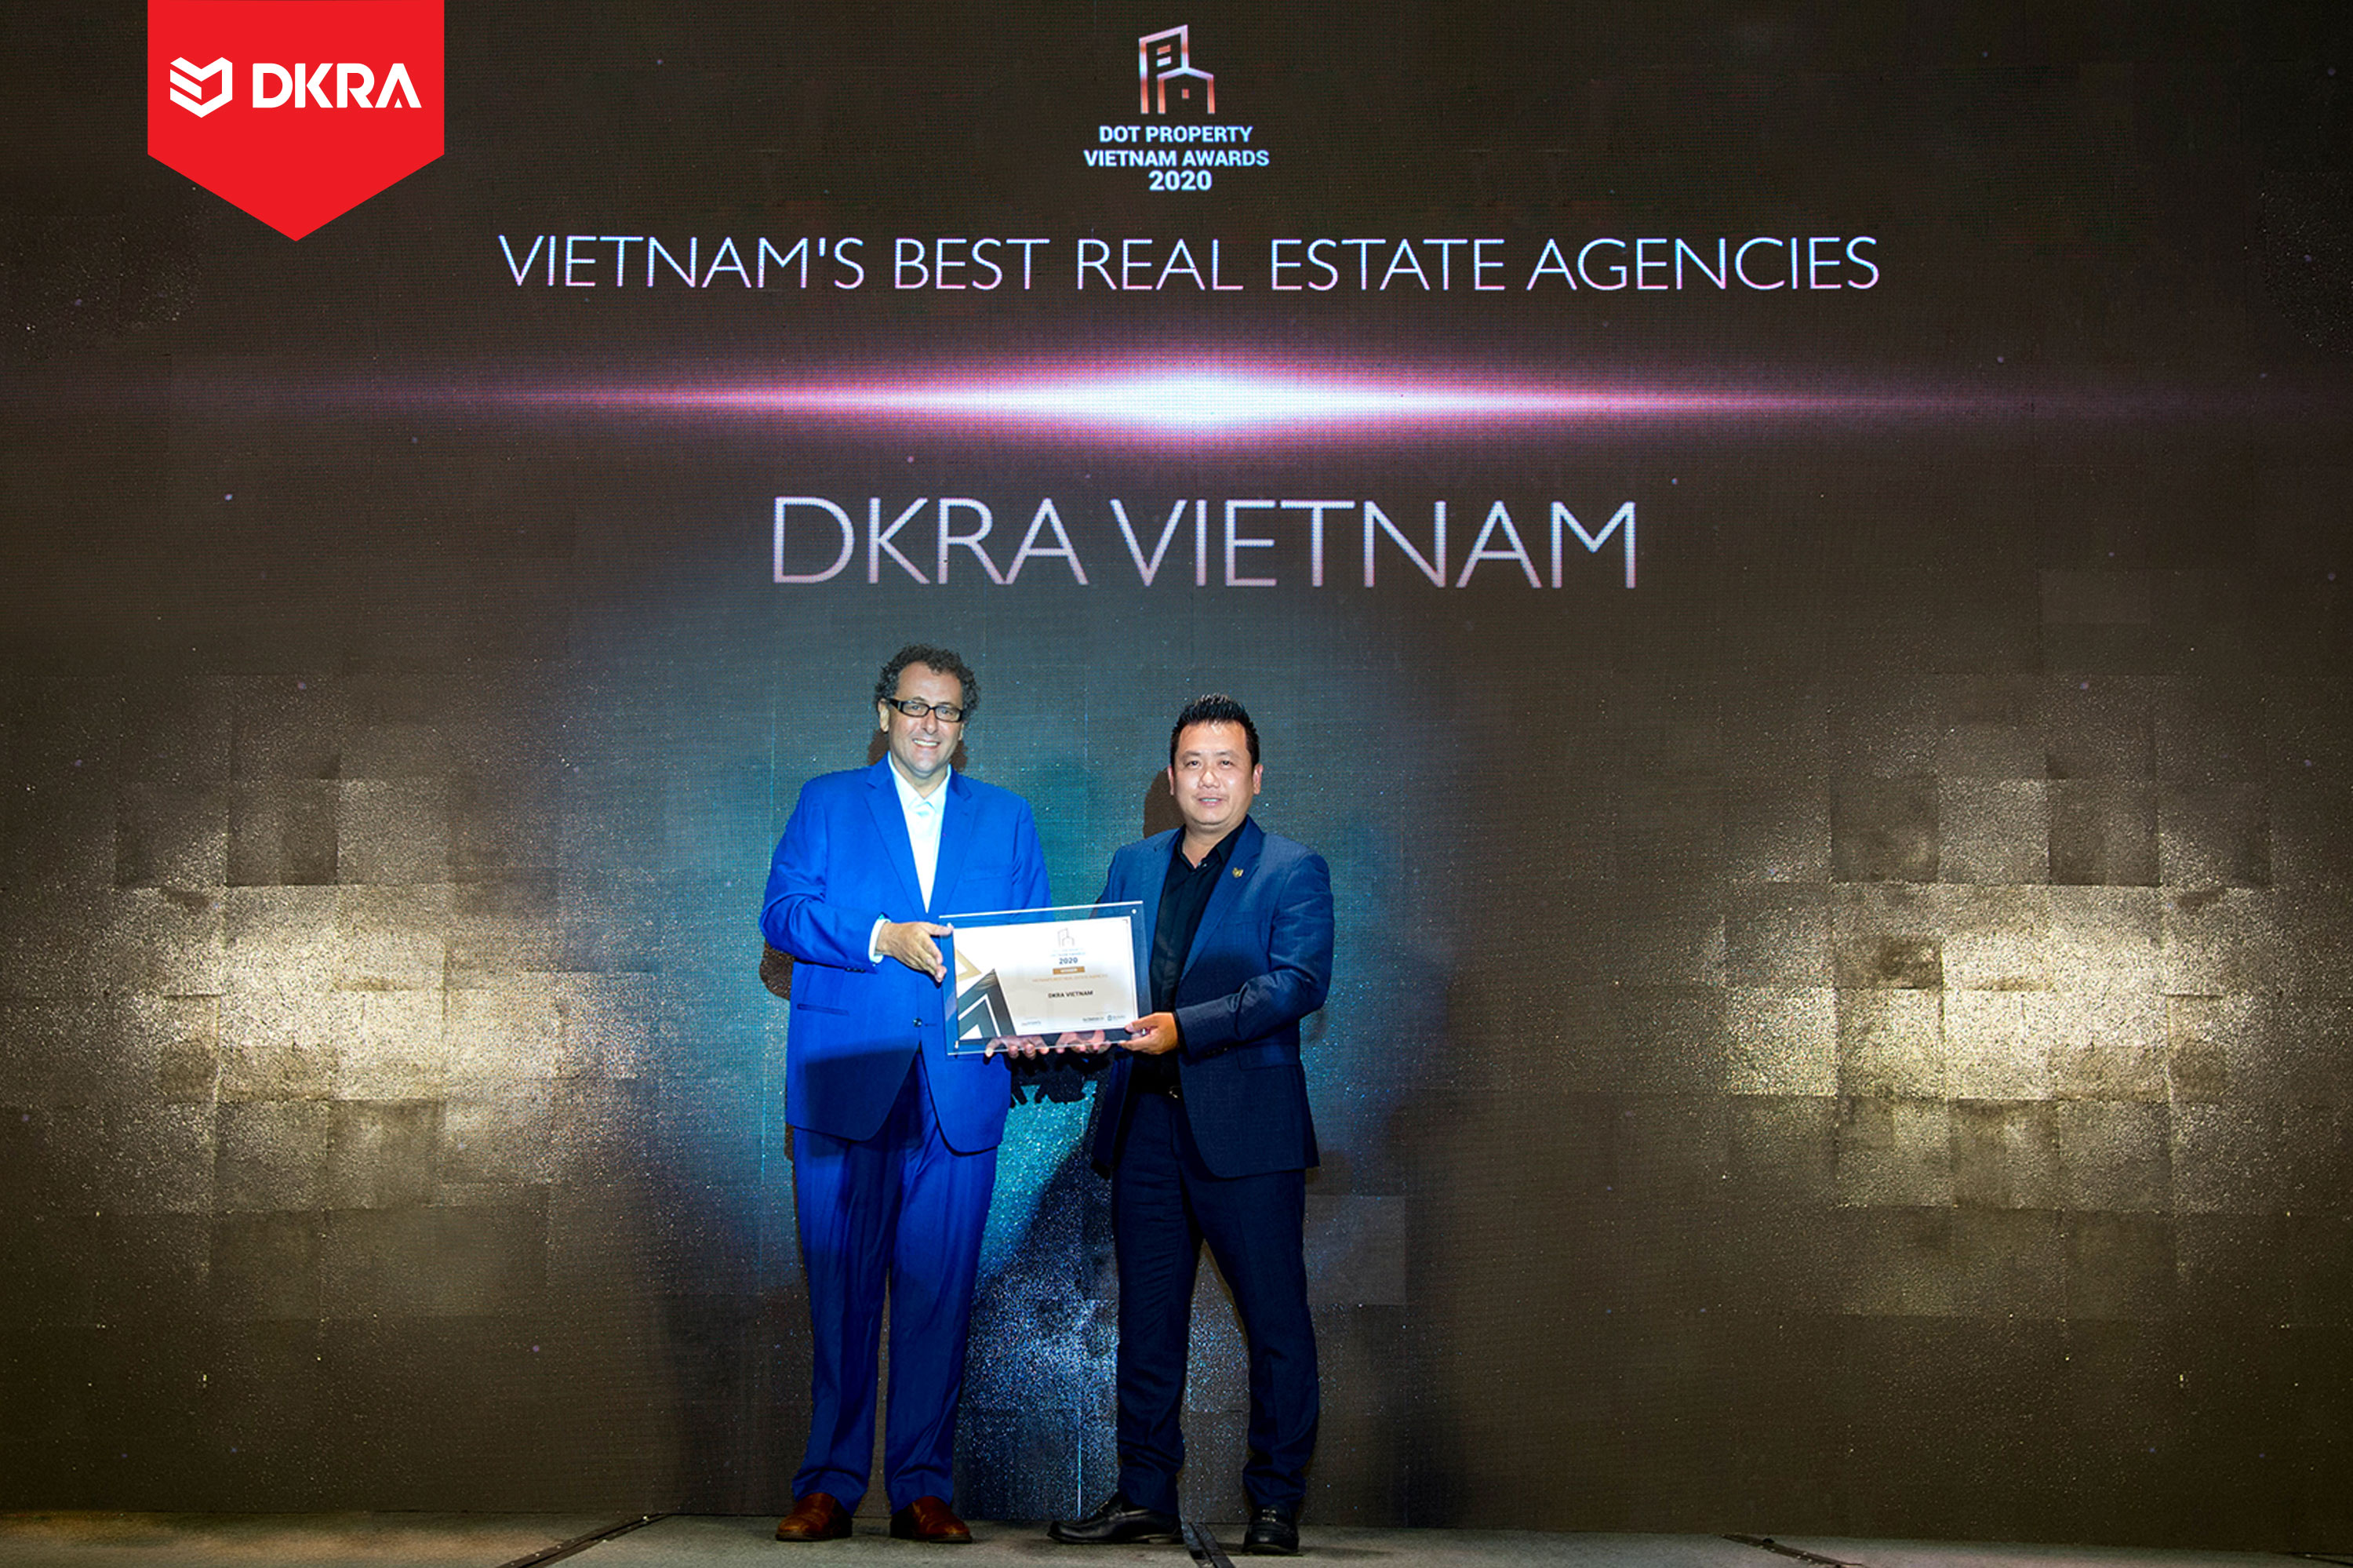 DKRA Group “Đơn vị phân phối bất động sản tốt nhất Đông Nam Á” do Dot Property Vietnam Awards trao tặng 2019 và 2020